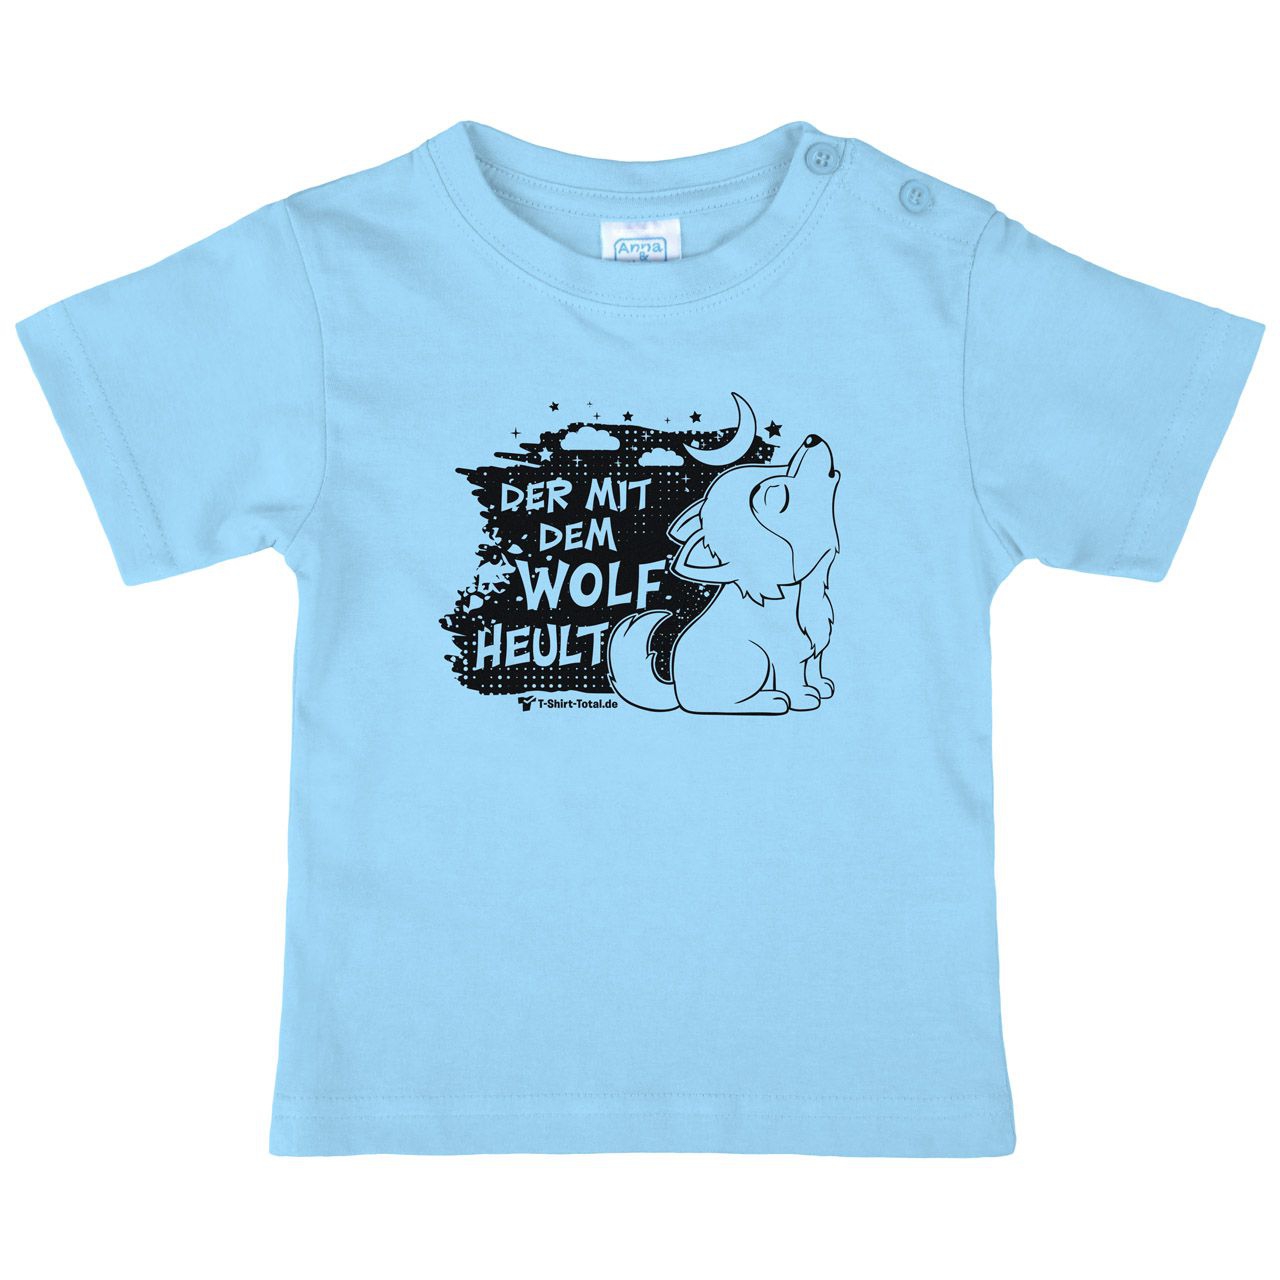 Der mit dem Wolf Kinder T-Shirt hellblau 80 / 86